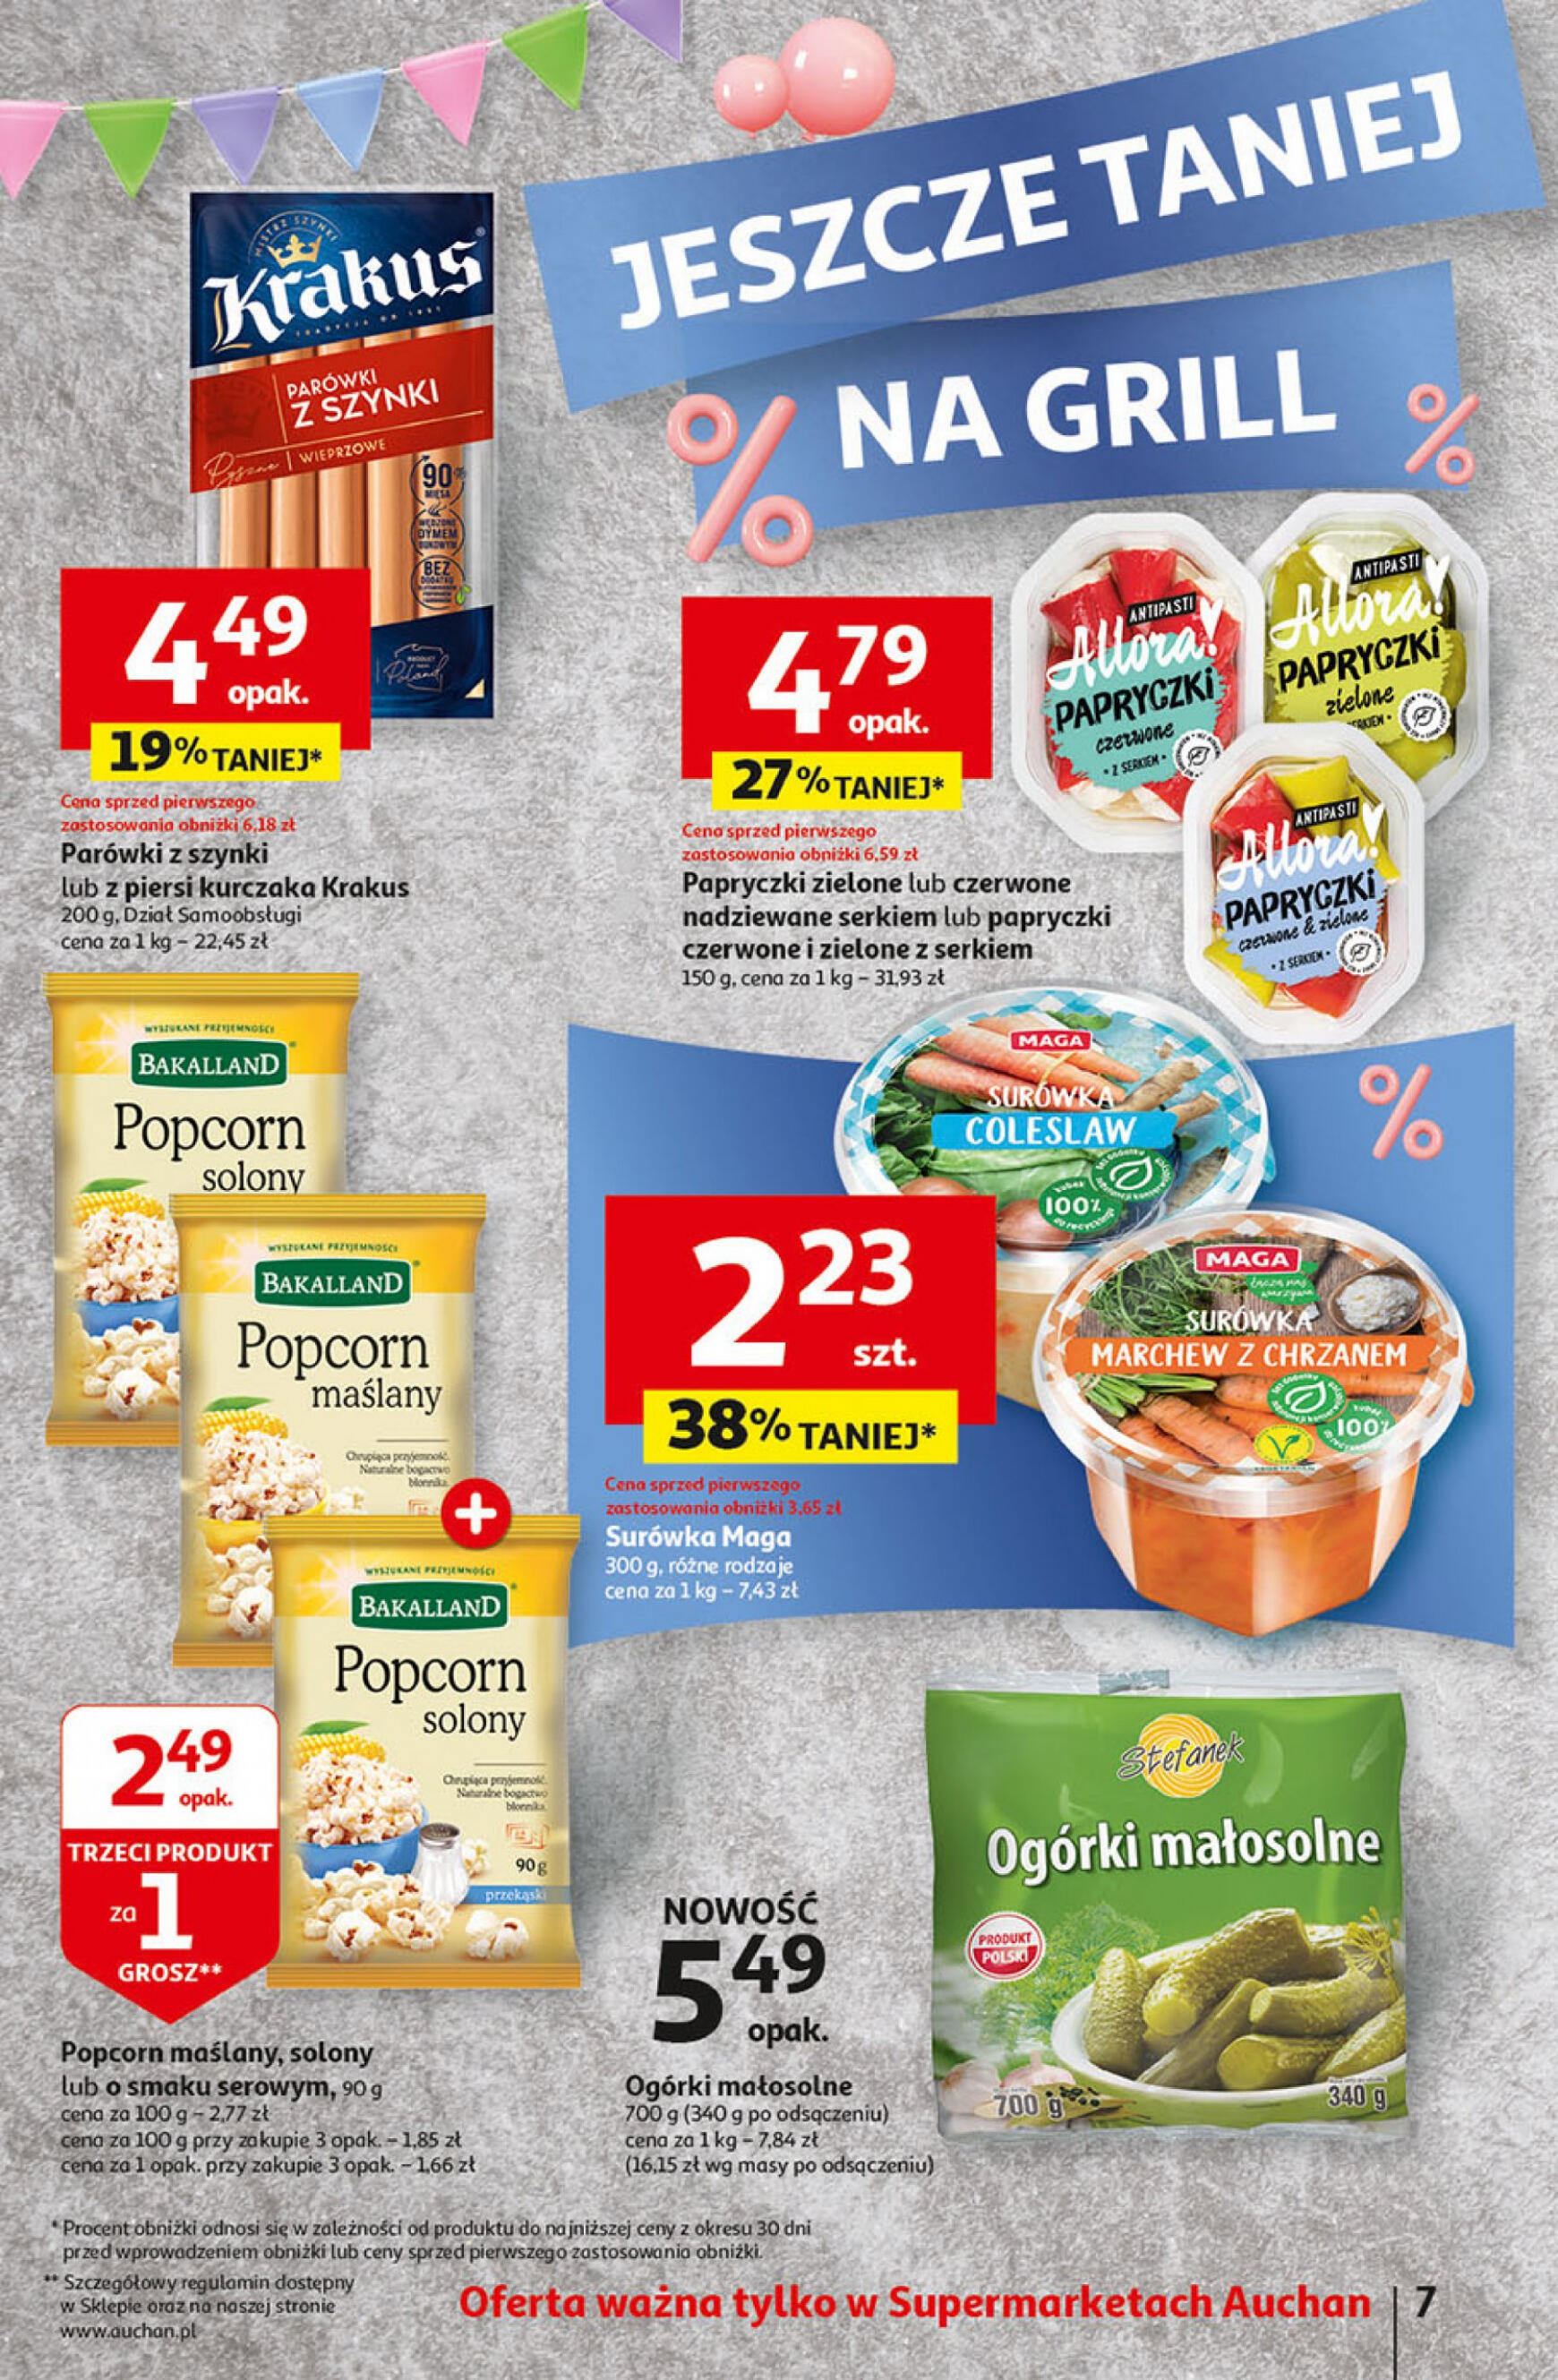 auchan - Supermarket Auchan - Gazetka Jeszcze taniej na urodziny gazetka aktualna ważna od 25.04. - 30.04. - page: 7